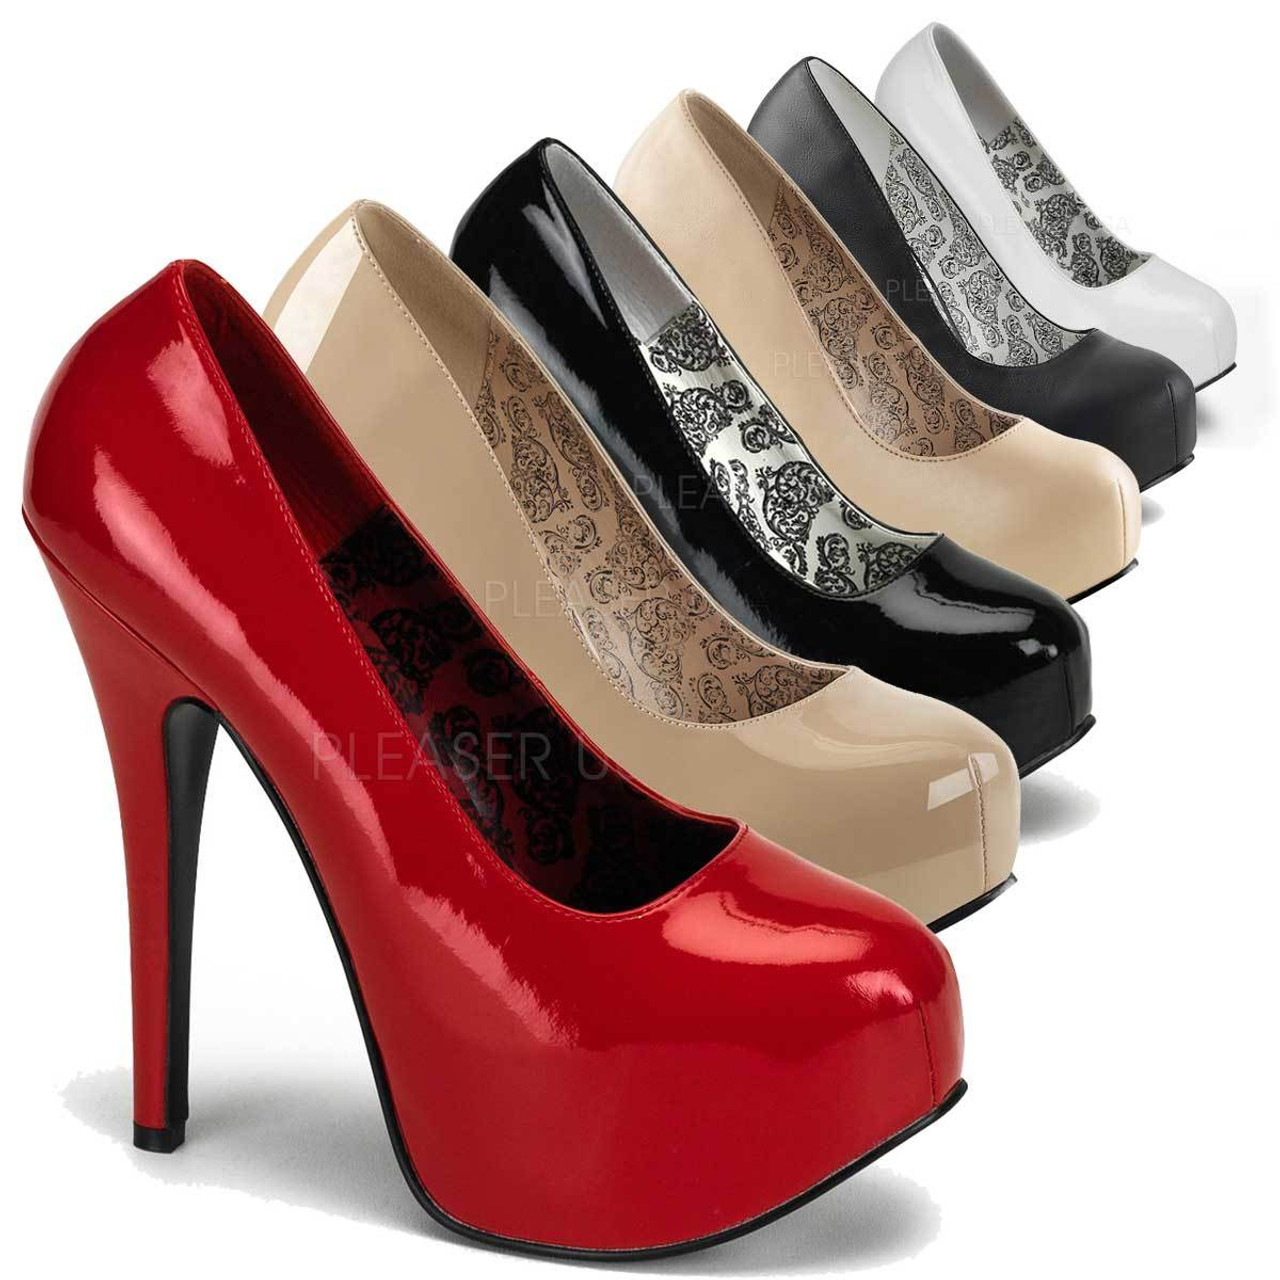 pleaser wide width heels